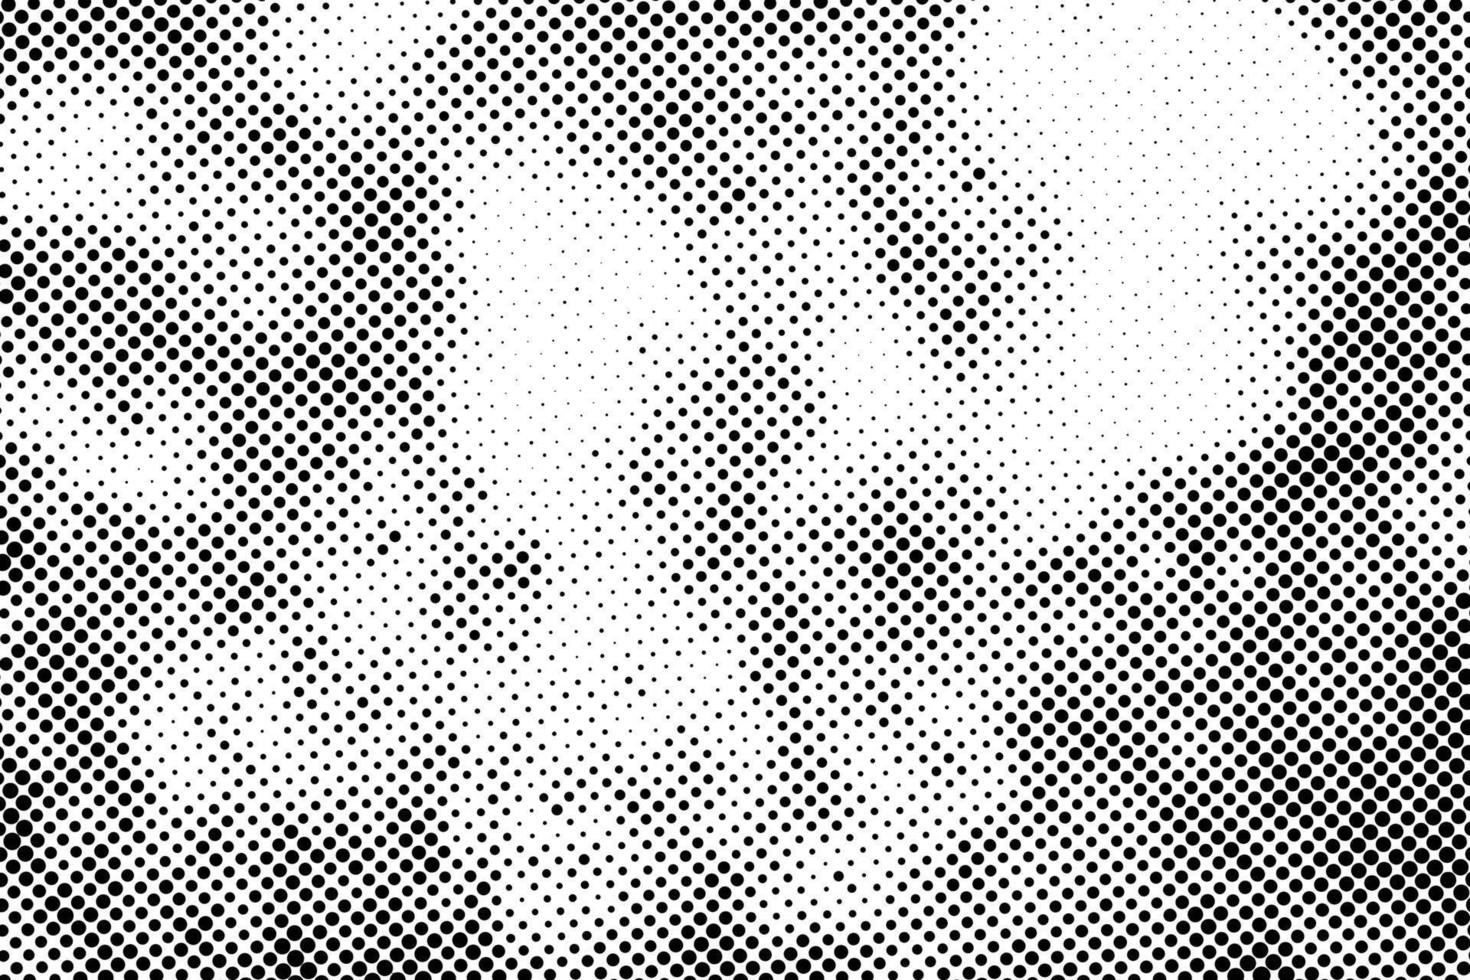 patrón de puntos negros vectoriales. textura de trama de semitonos pixelada sobre fondo blanco. vector